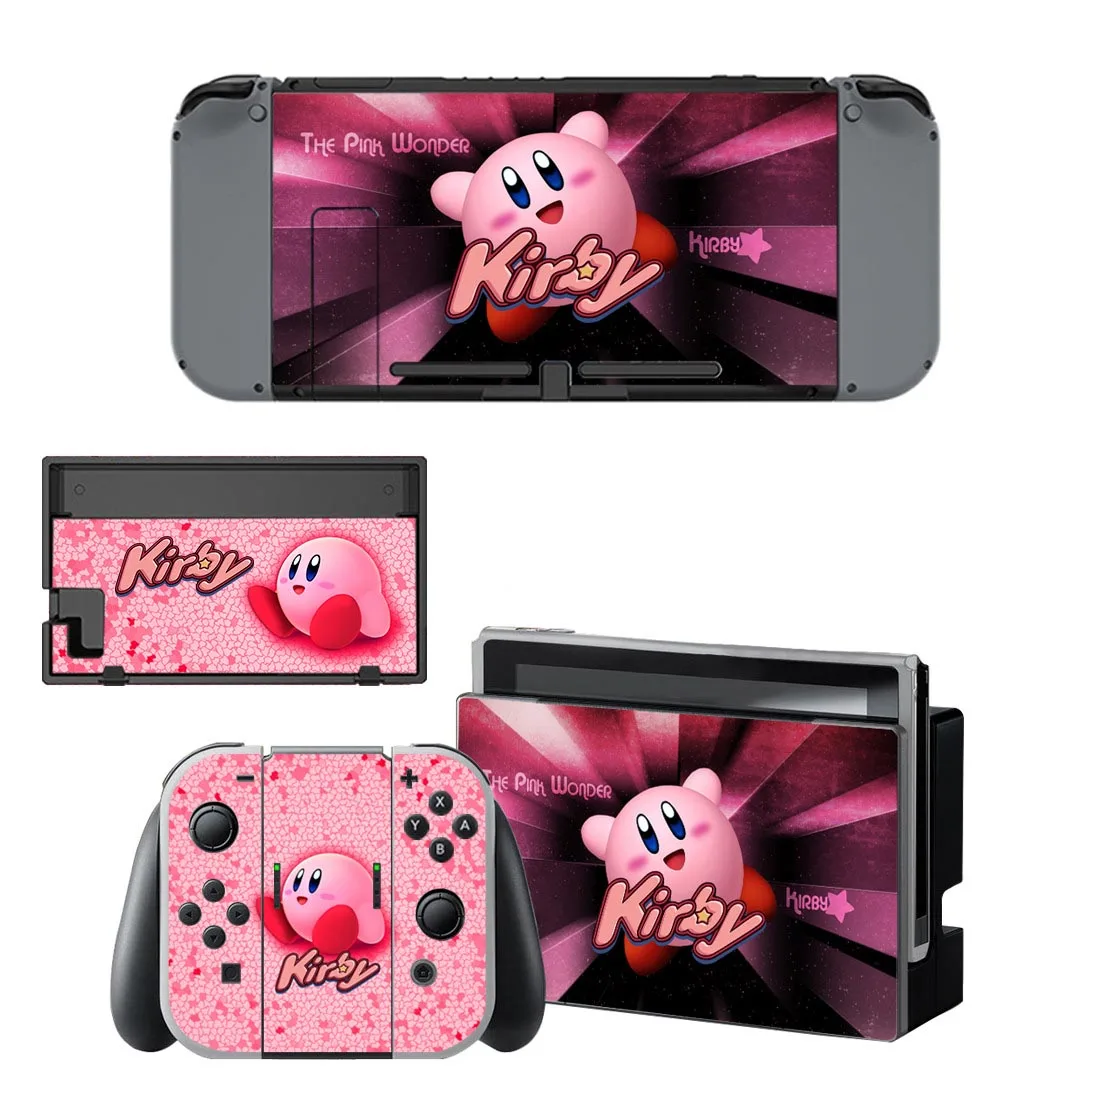 Сменные наклейки Switch Skin kirby Nintendo, сменные наклейки, совместимые с консолью Nintendo doswitch, Joy-Con, контроллером